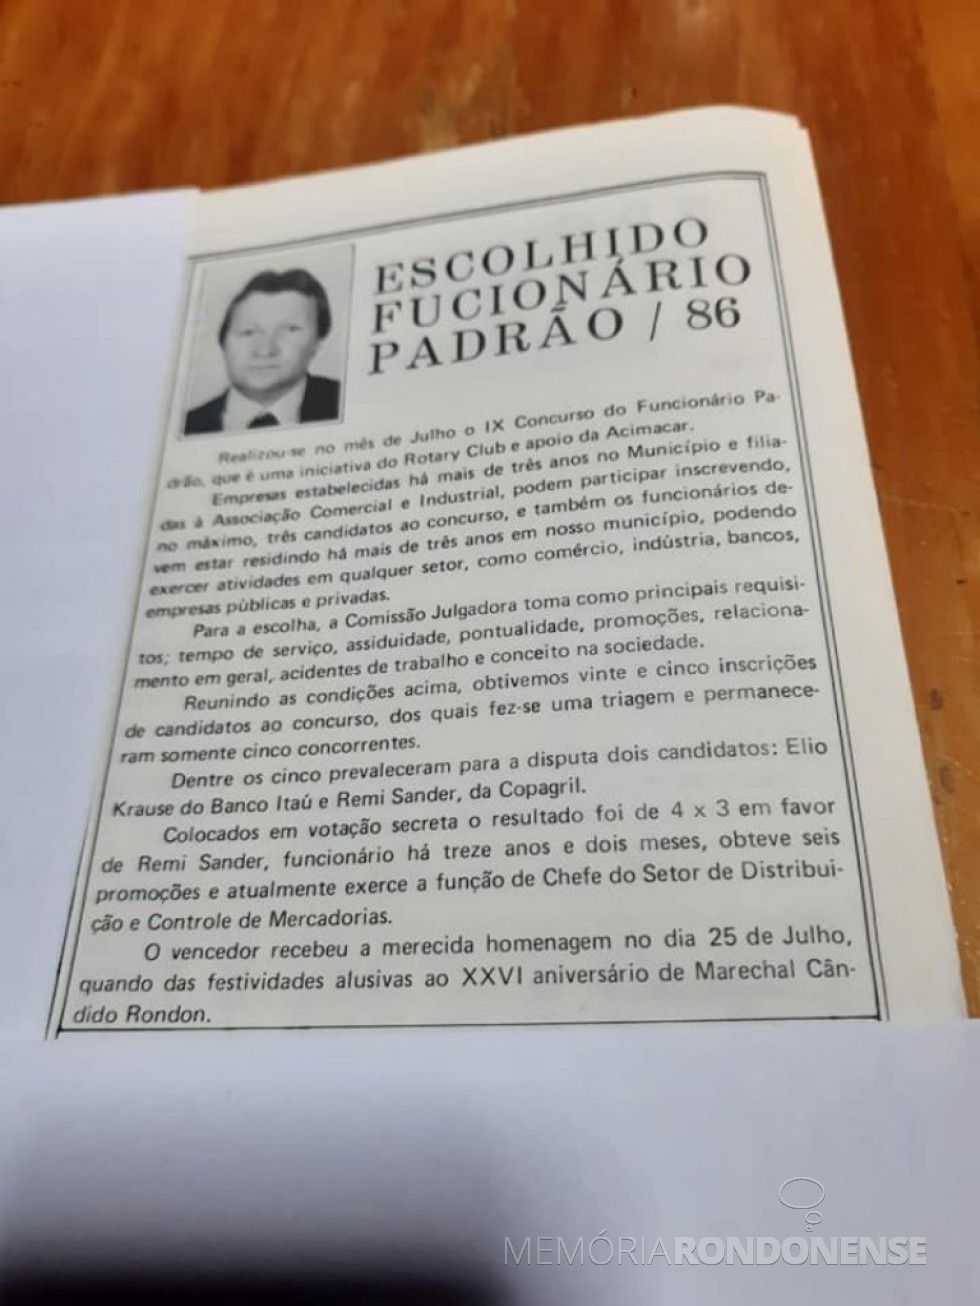 Destaque sobre a homenagem a Remi Sander como funcionário padrão 86 de Marechal Cândido Rondon.
Imagem: Acervo pessoal - FOTO 21 -